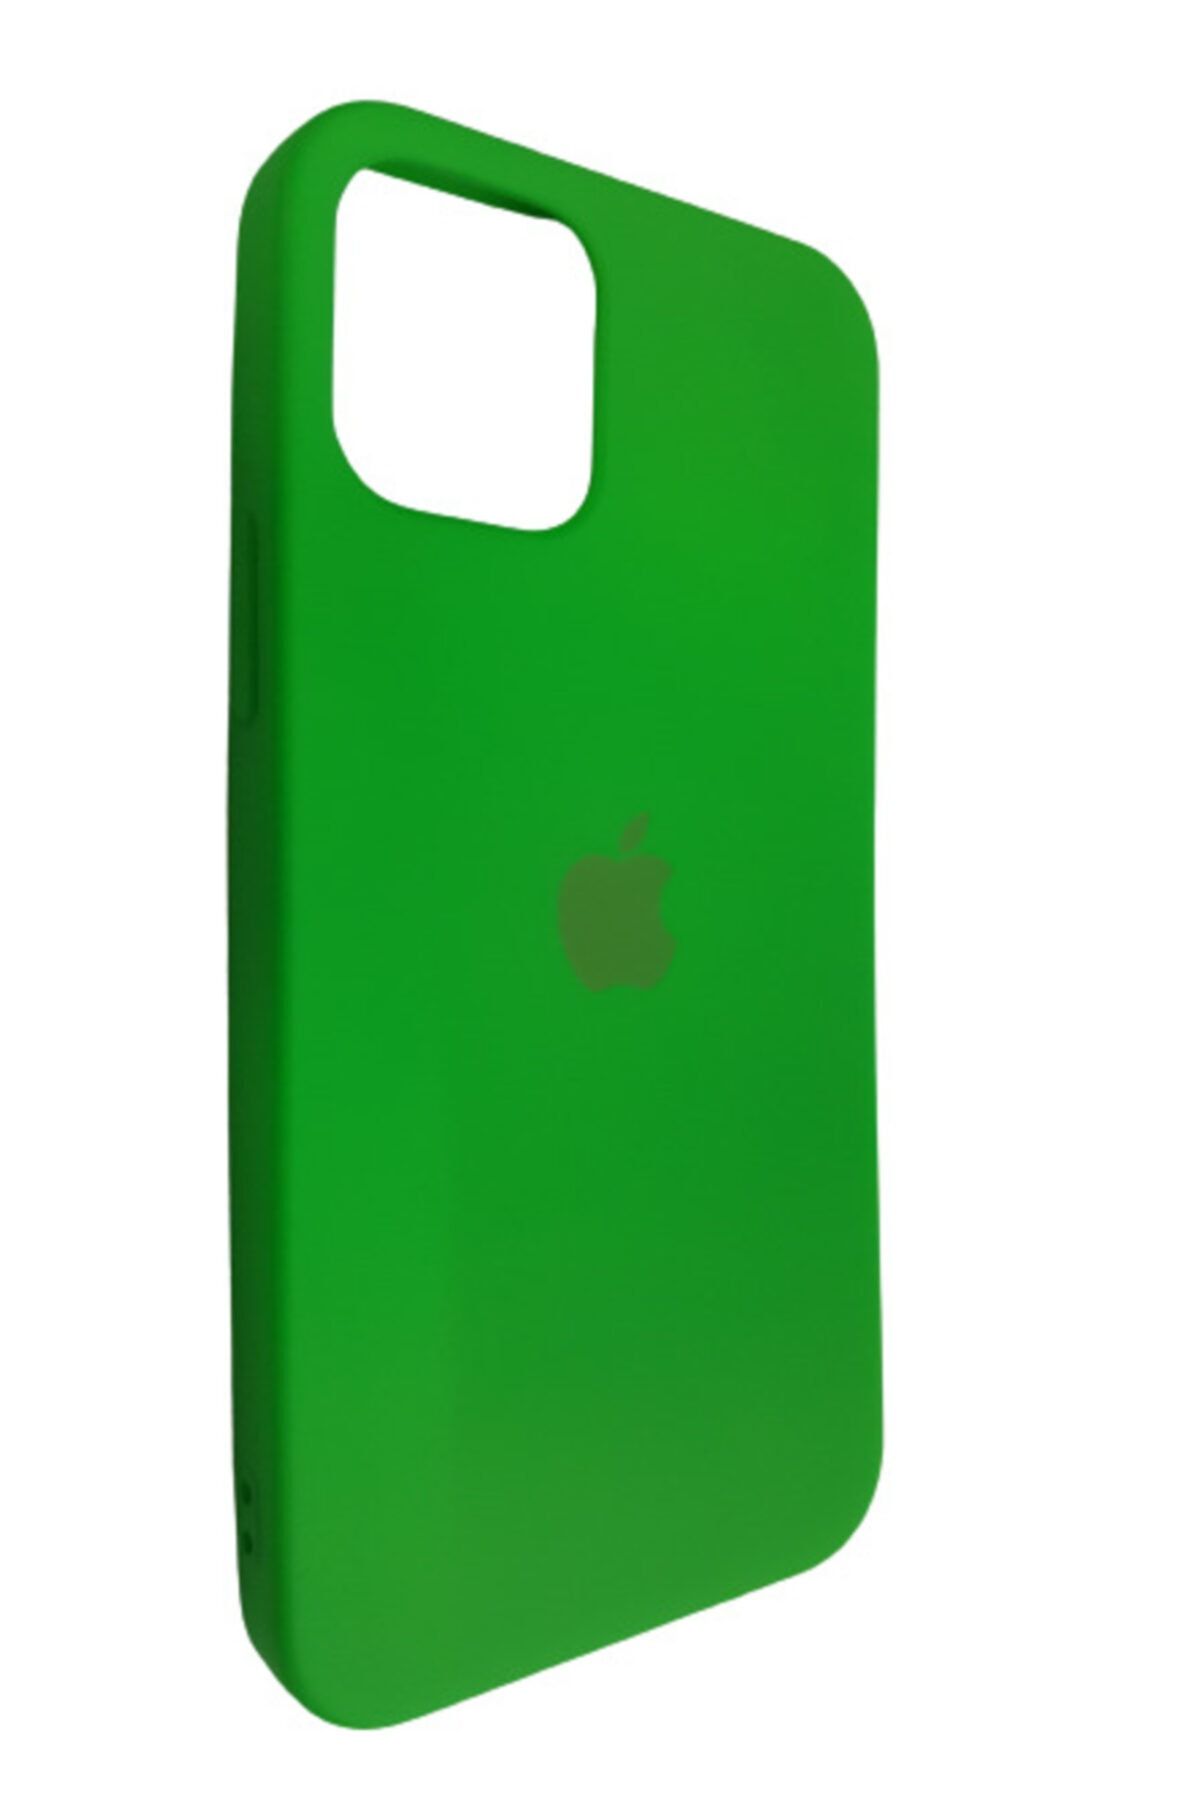 Pirok Store Iphone 12 Pro 6.1 Fıstık Yeşili Lansman Içi Kadife Logolu Silikon Kılıf